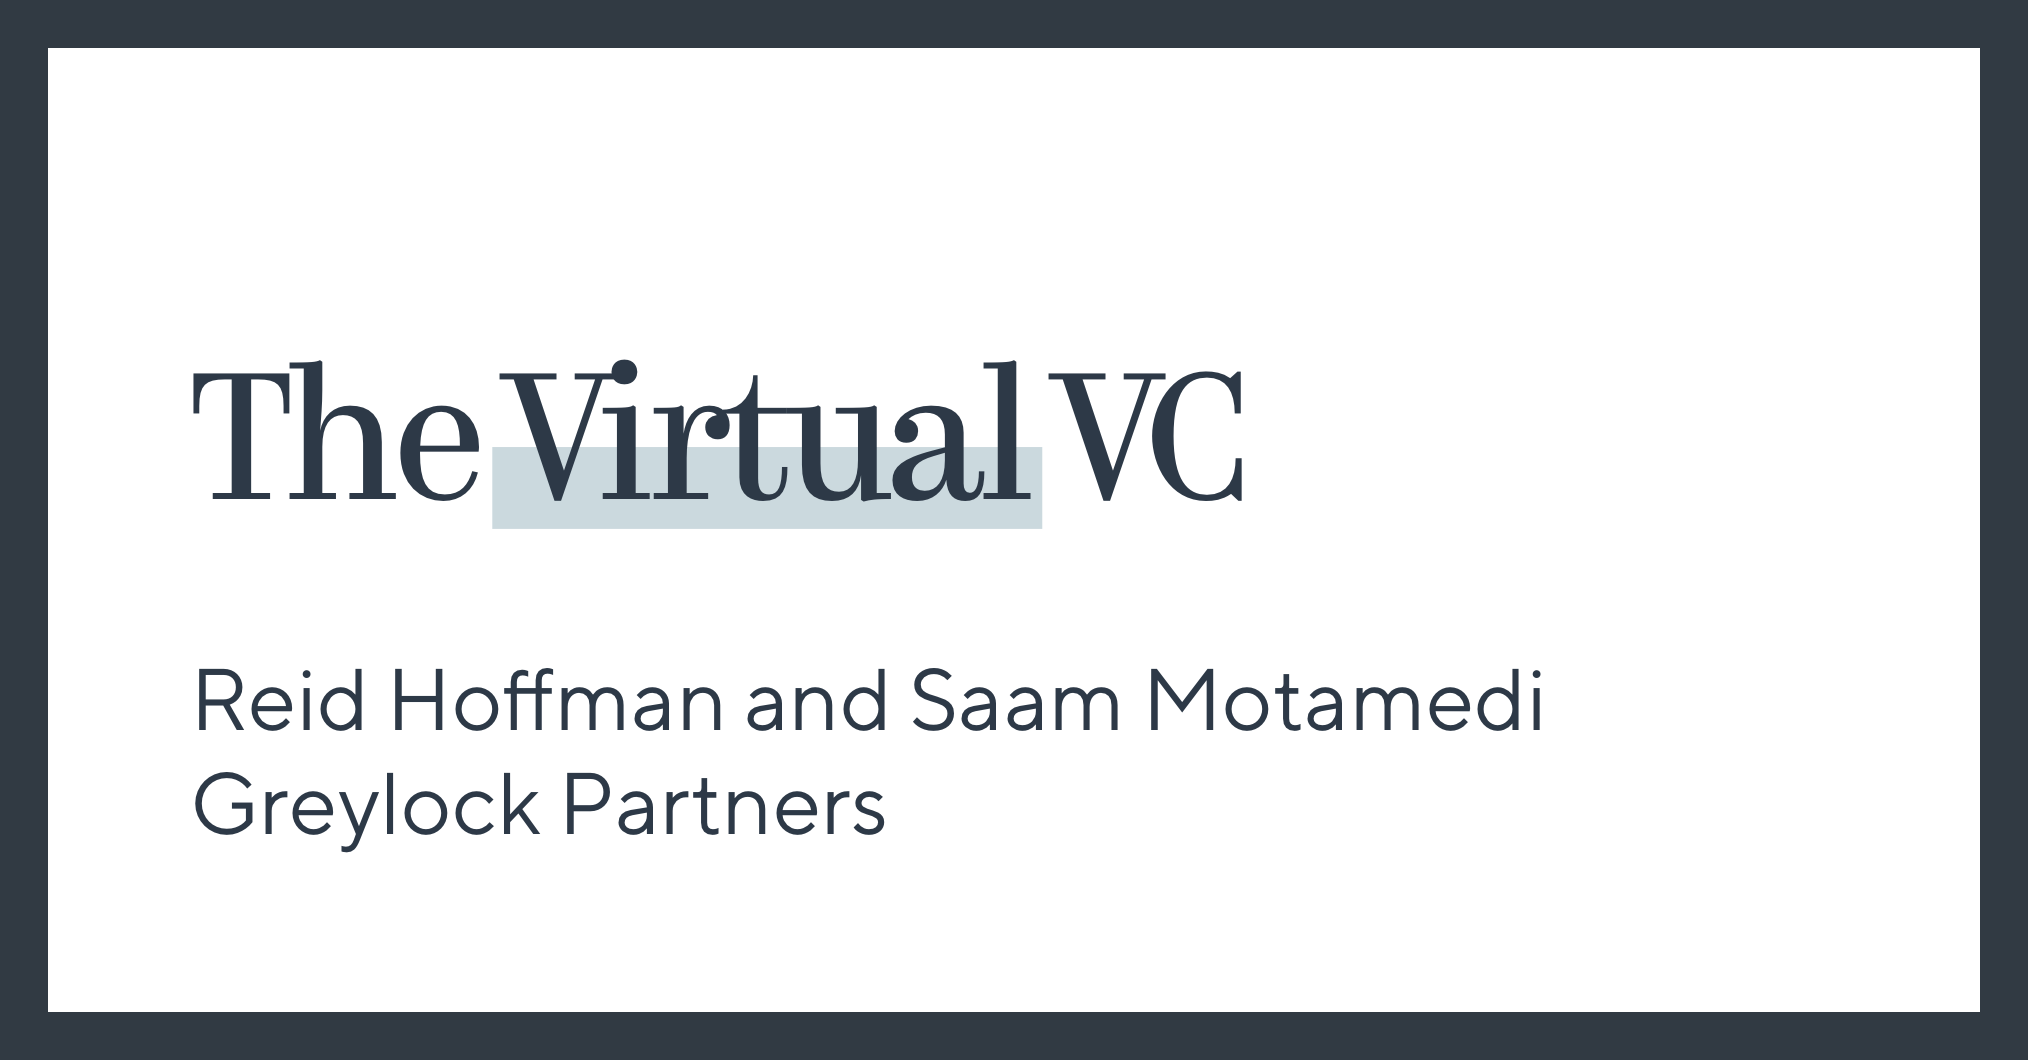 The Virtual VC